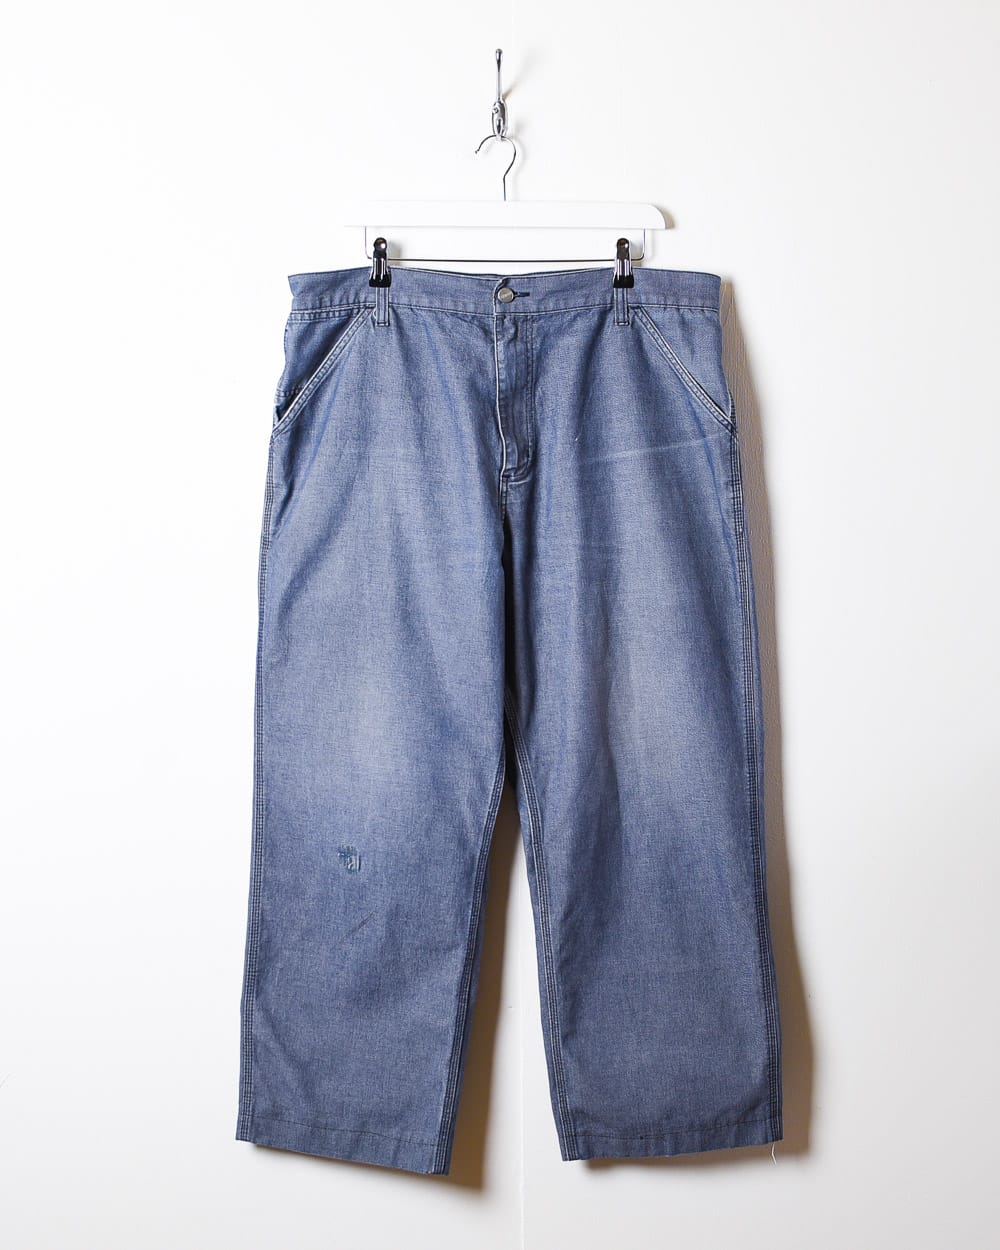 Navy Carhartt Jeans - W38 L27